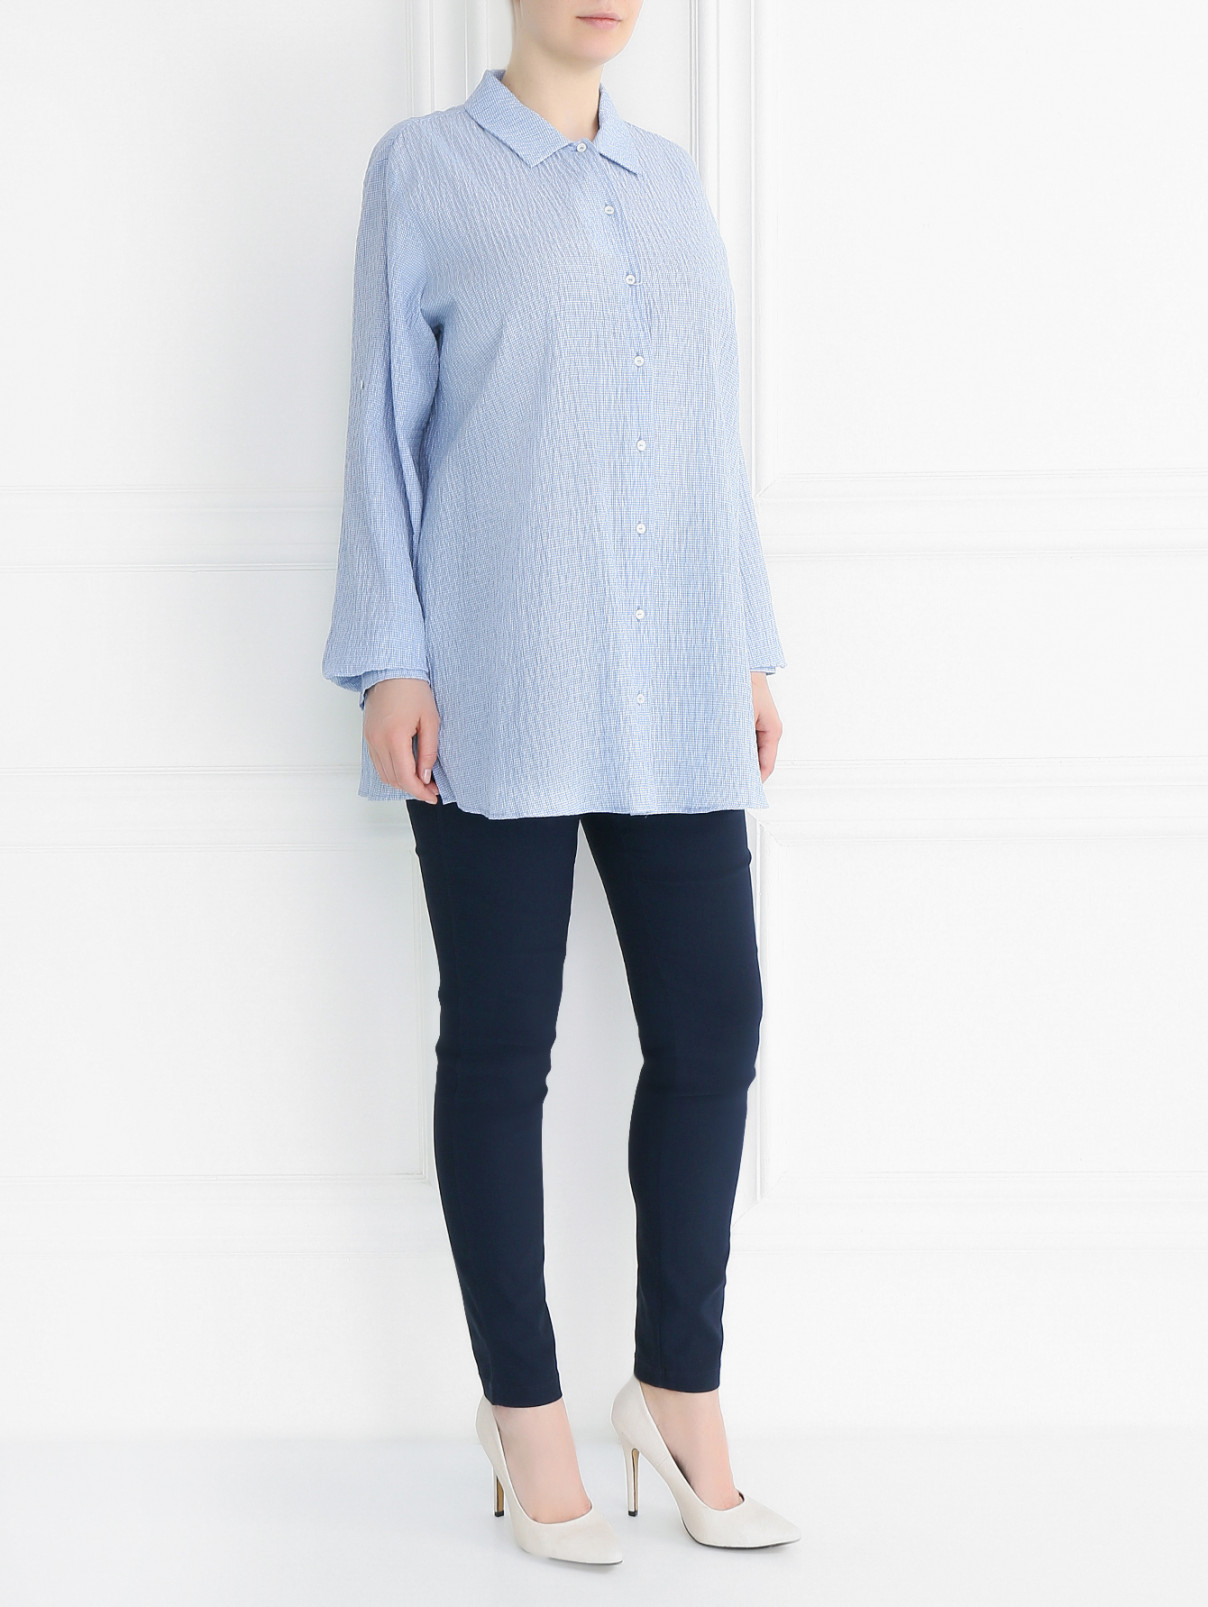 Блуза из жатого хлопка с длинным рукавом Voyage by Marina Rinaldi  –  Модель Общий вид  – Цвет:  Синий